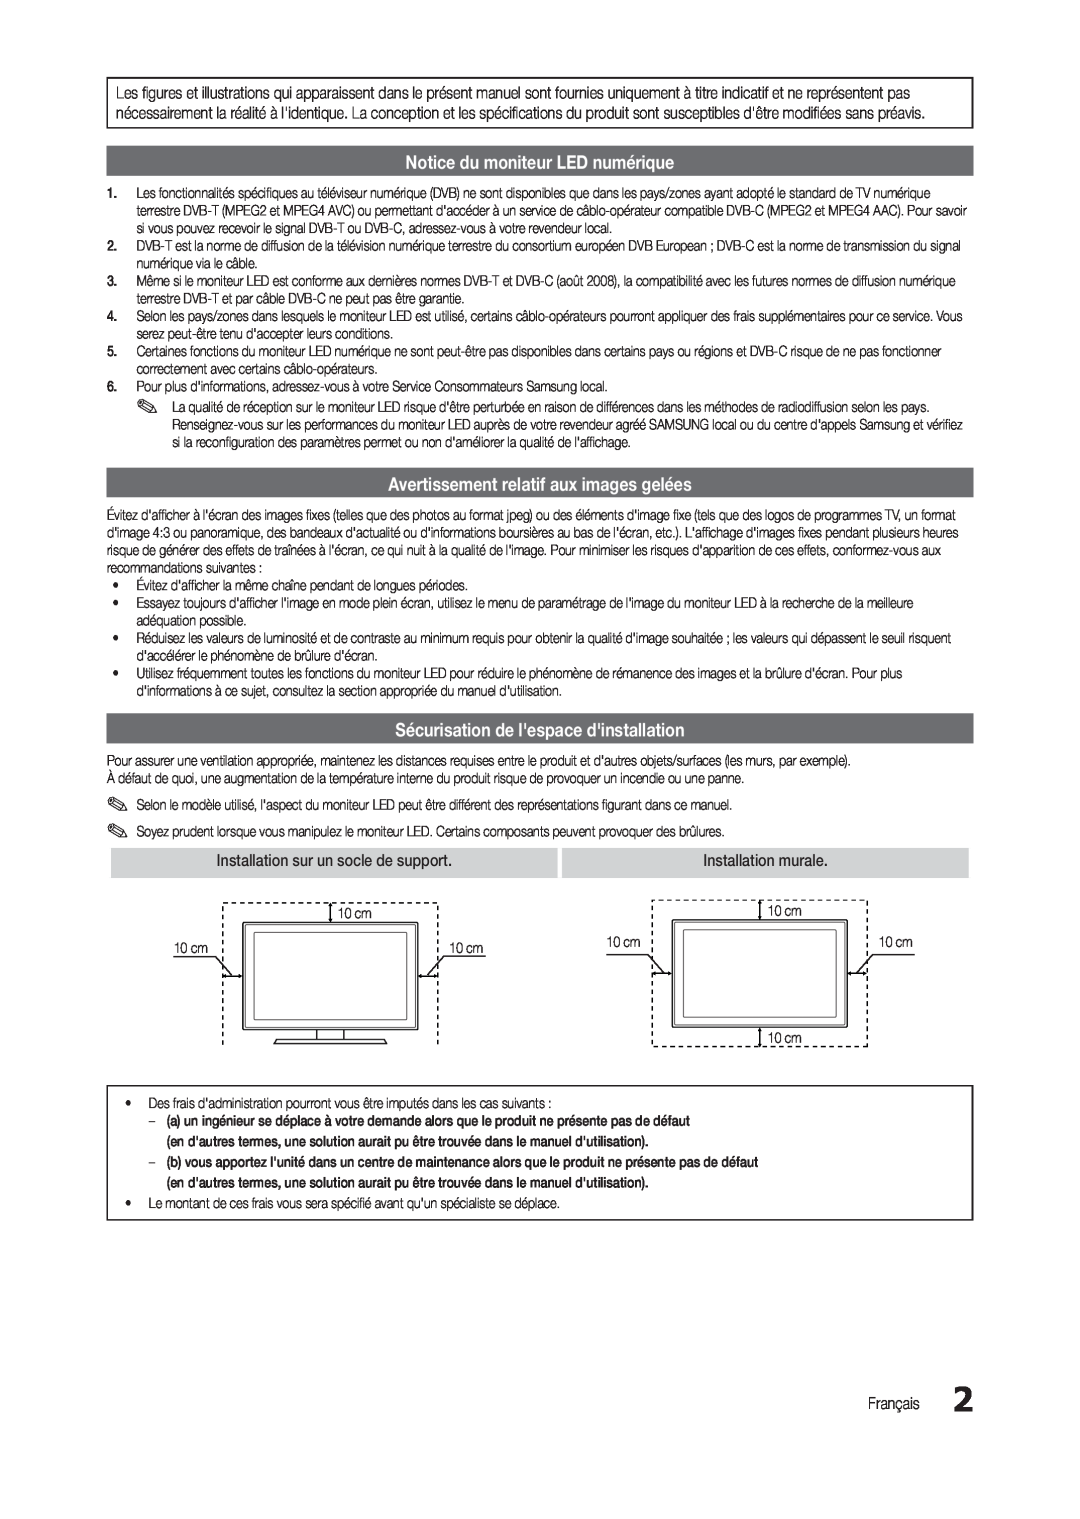 Samsung LT24C300EW/EN manual Notice du moniteur LED numérique, Avertissement relatif aux images gelées, Installation murale 